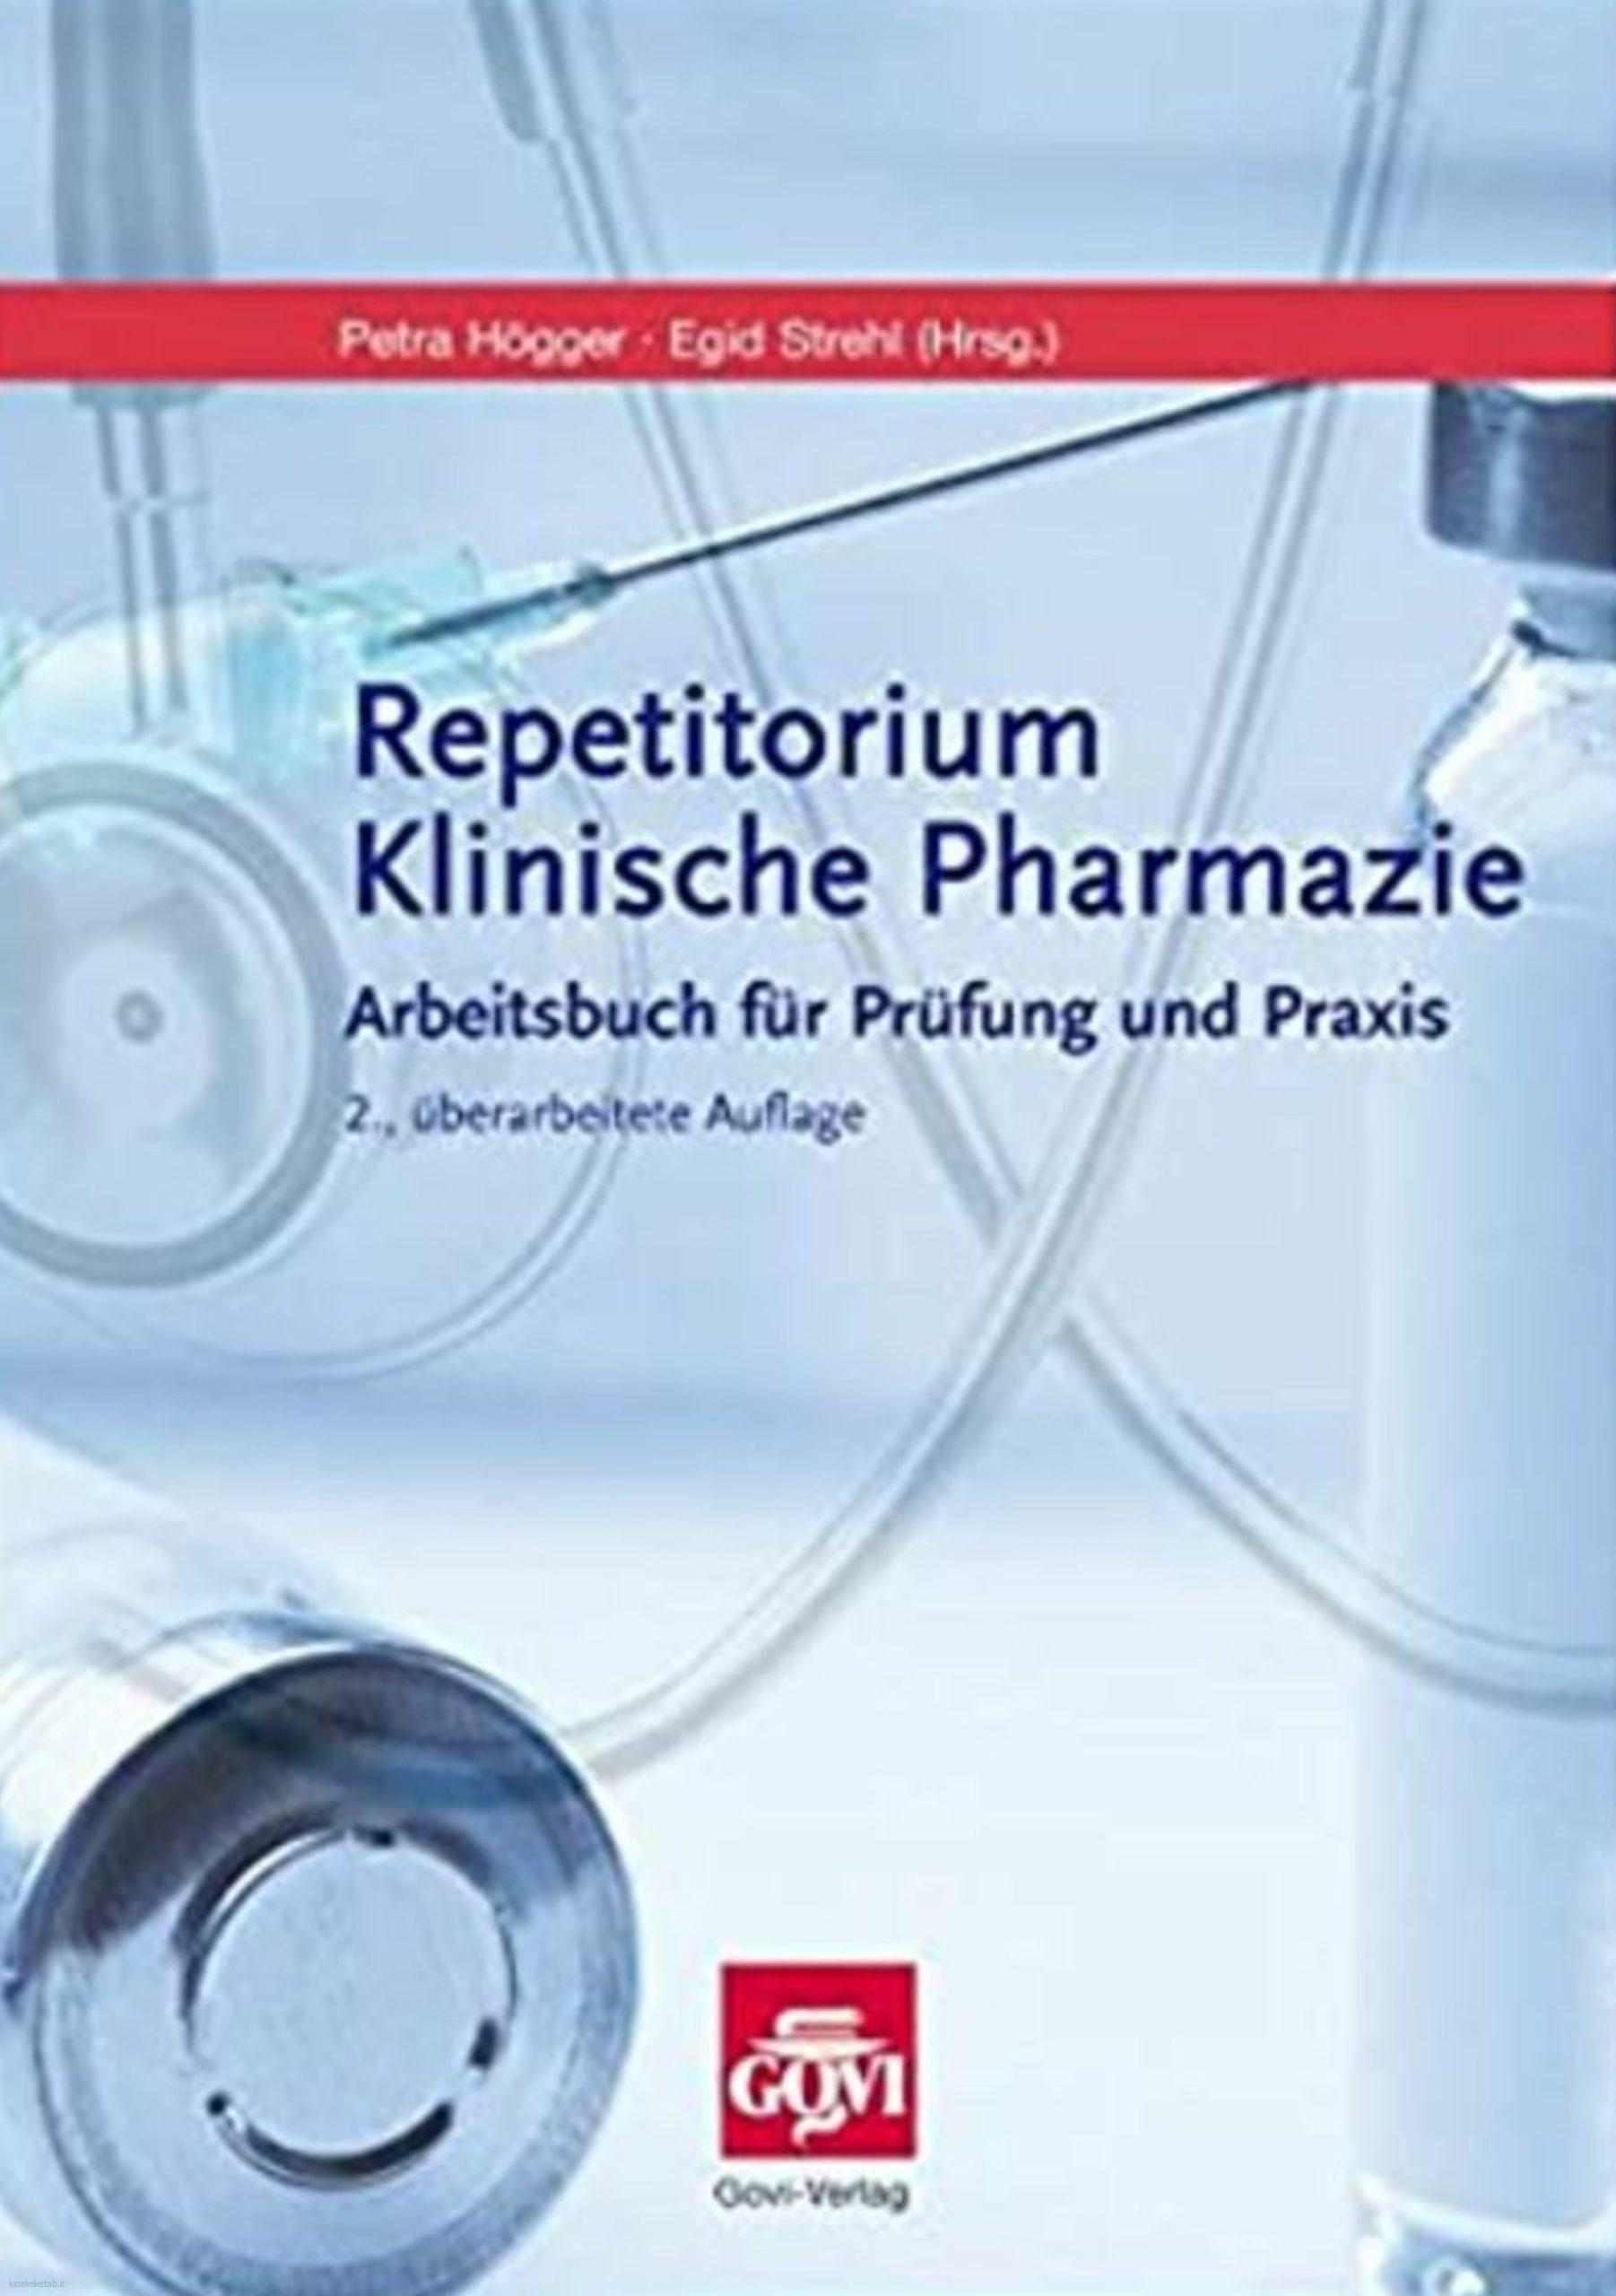 دانلود کتاب آلمانیrepetitorium klinische pharmazie